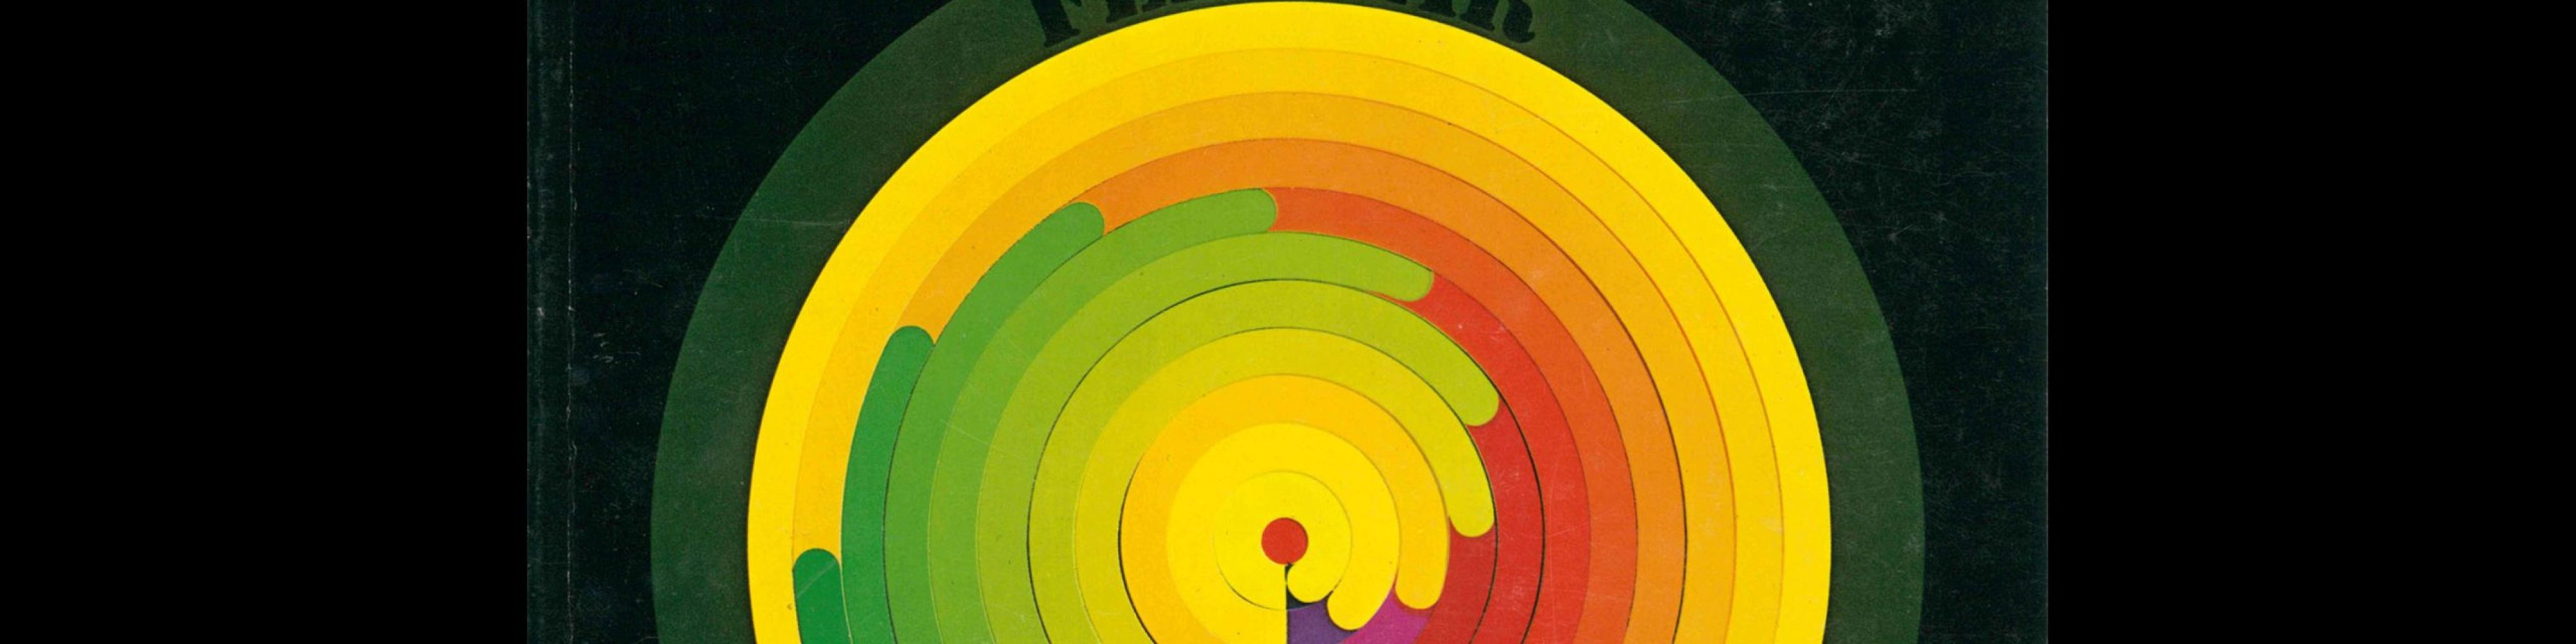 Novum Gebrauchsgraphik, 2, 1976. Cover design by Gebhardt + Lorenz